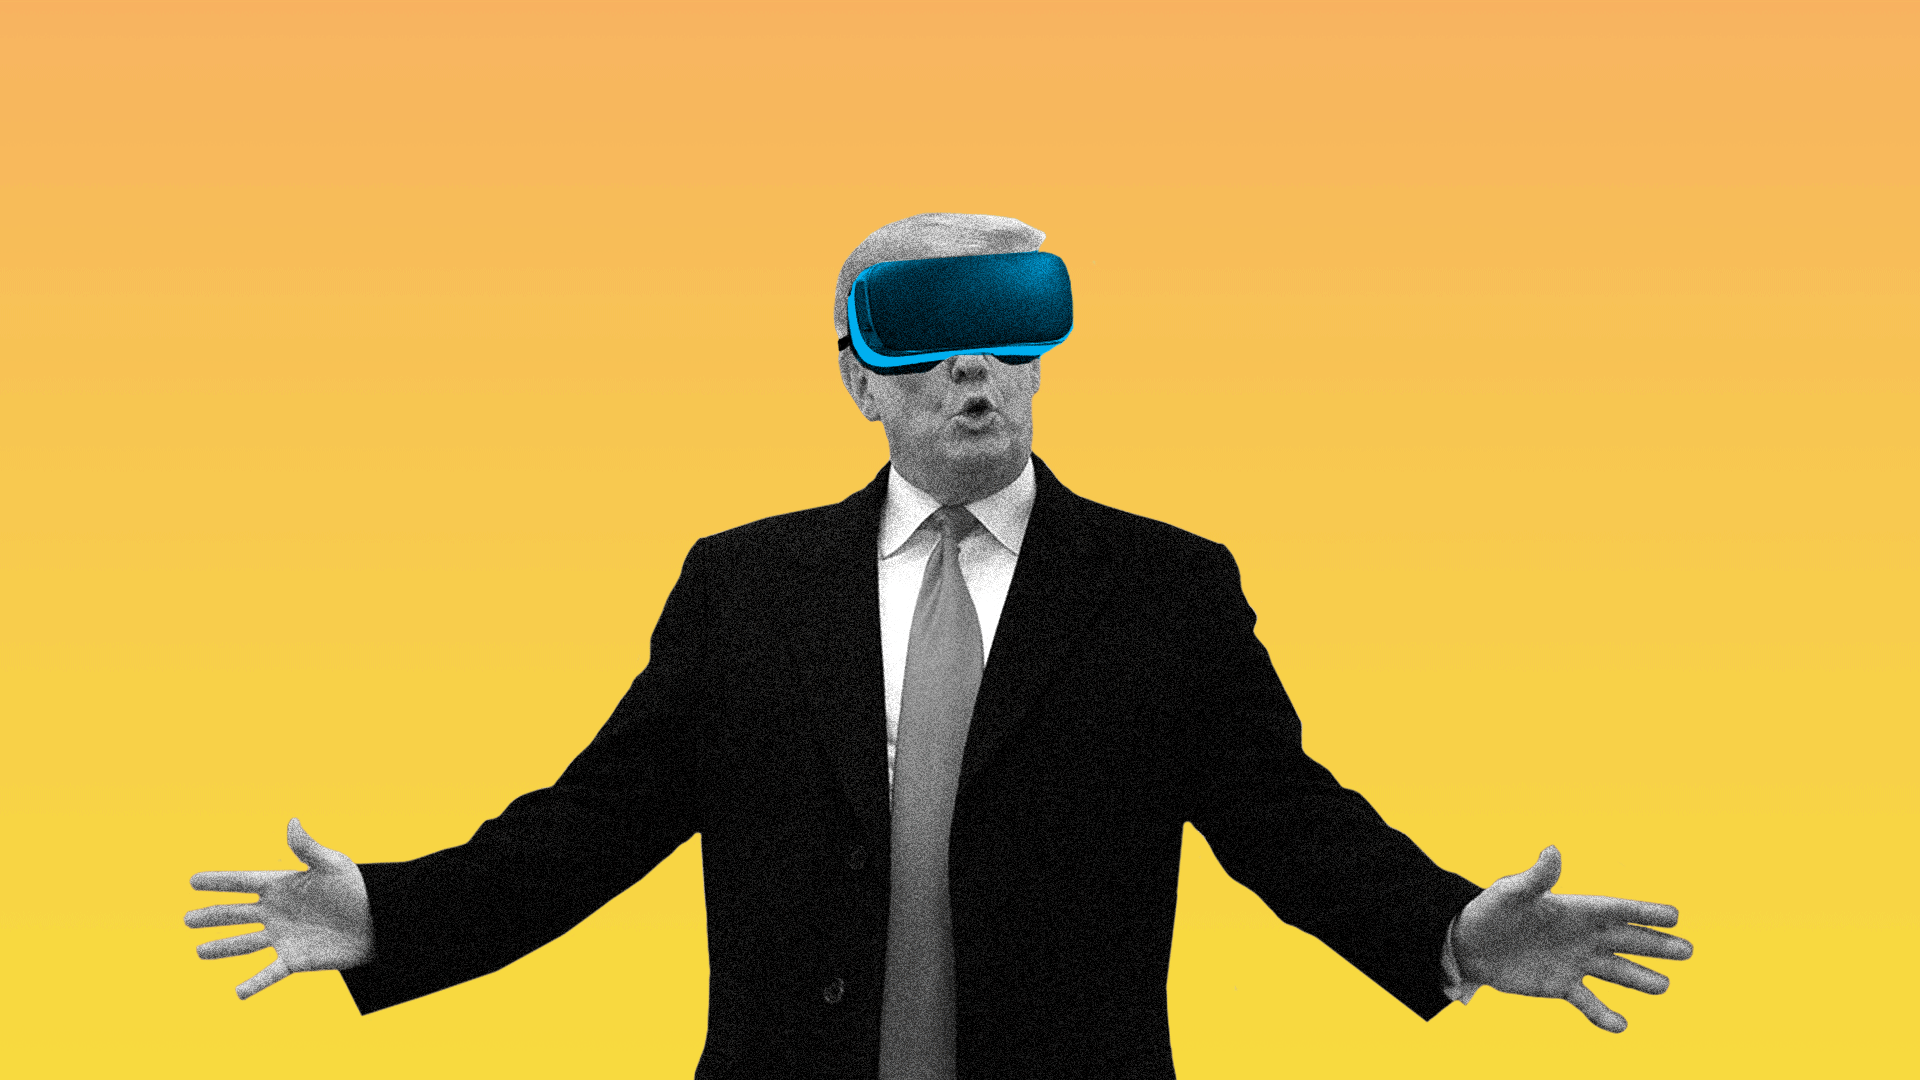 3 Trump #39 s virtual reality presidency